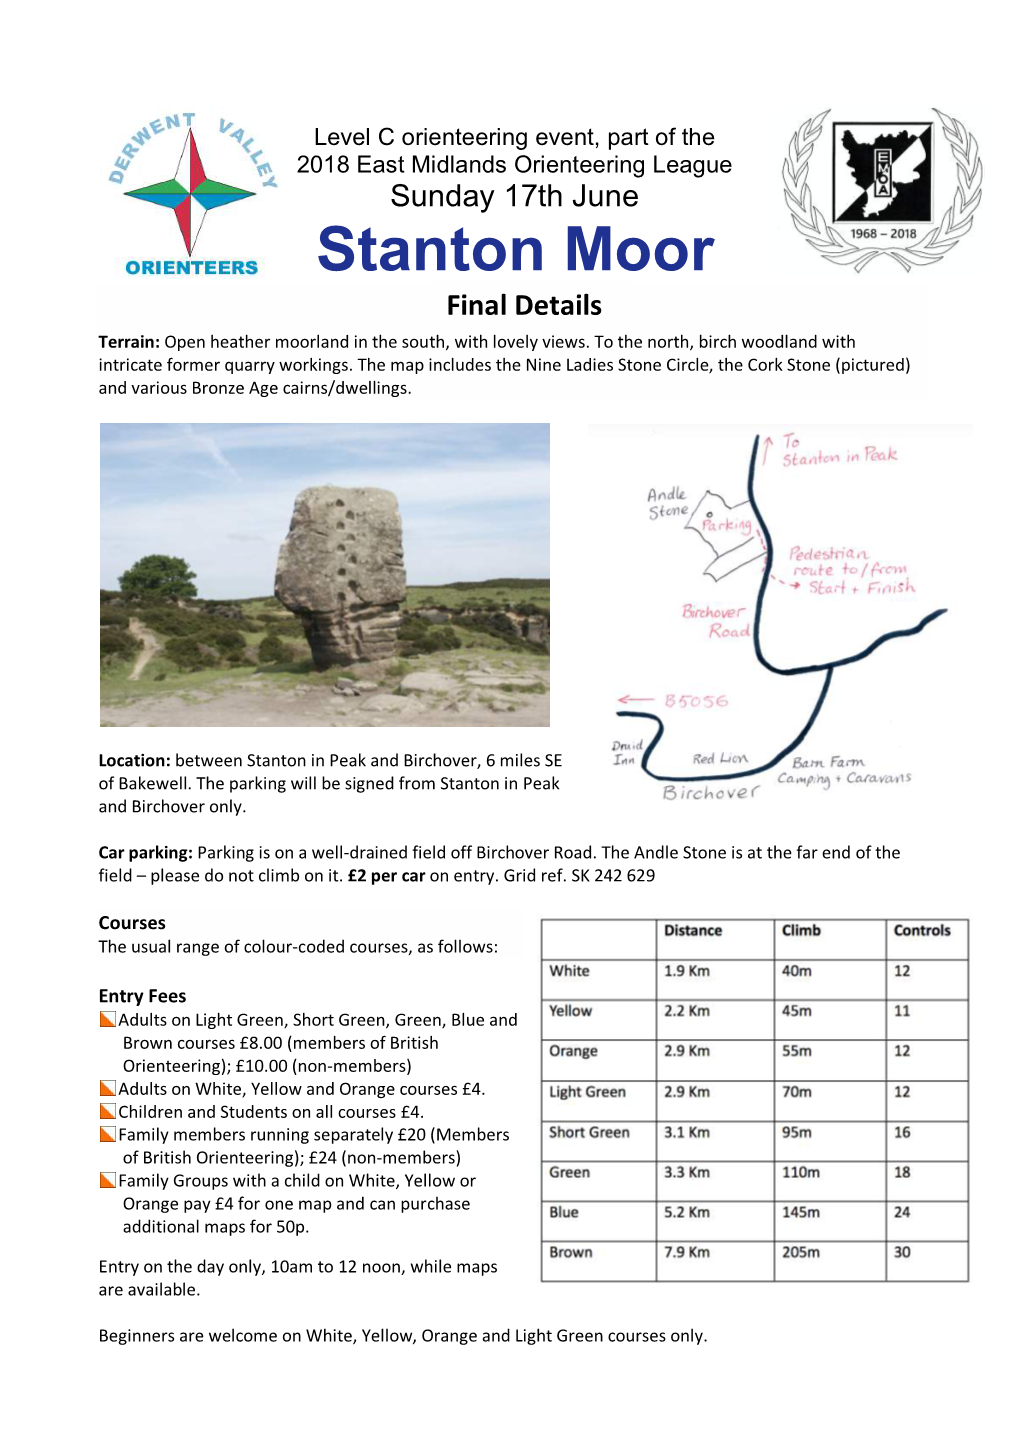 Stanton Moor